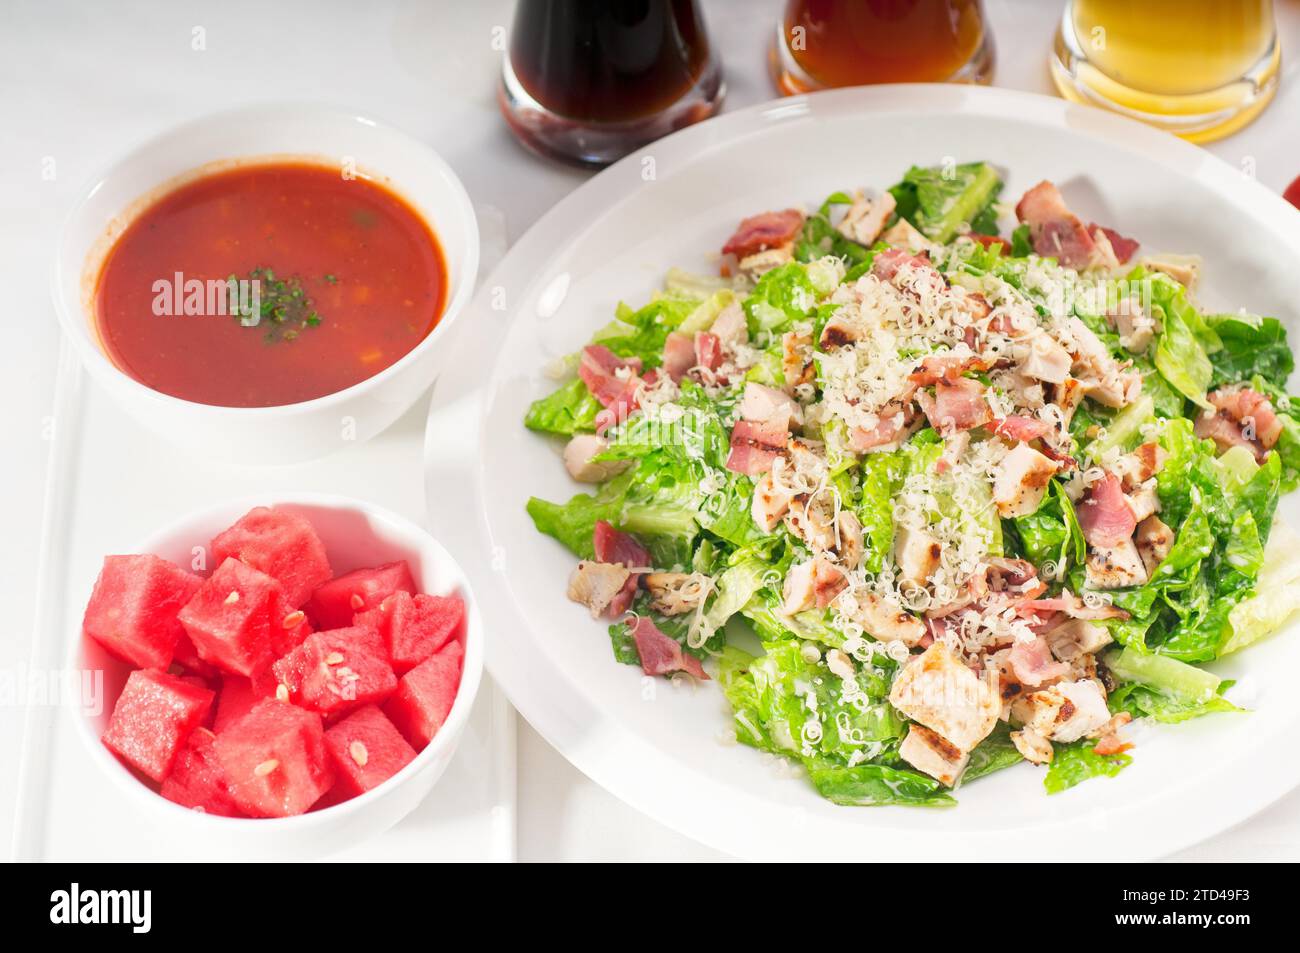 Frischer klassischer caesar-Salat, gesunde Mahlzeit, KÖSTLICHERE SPEISEN IM PORTFOLIO, Lebensmittelfotografie Stockfoto